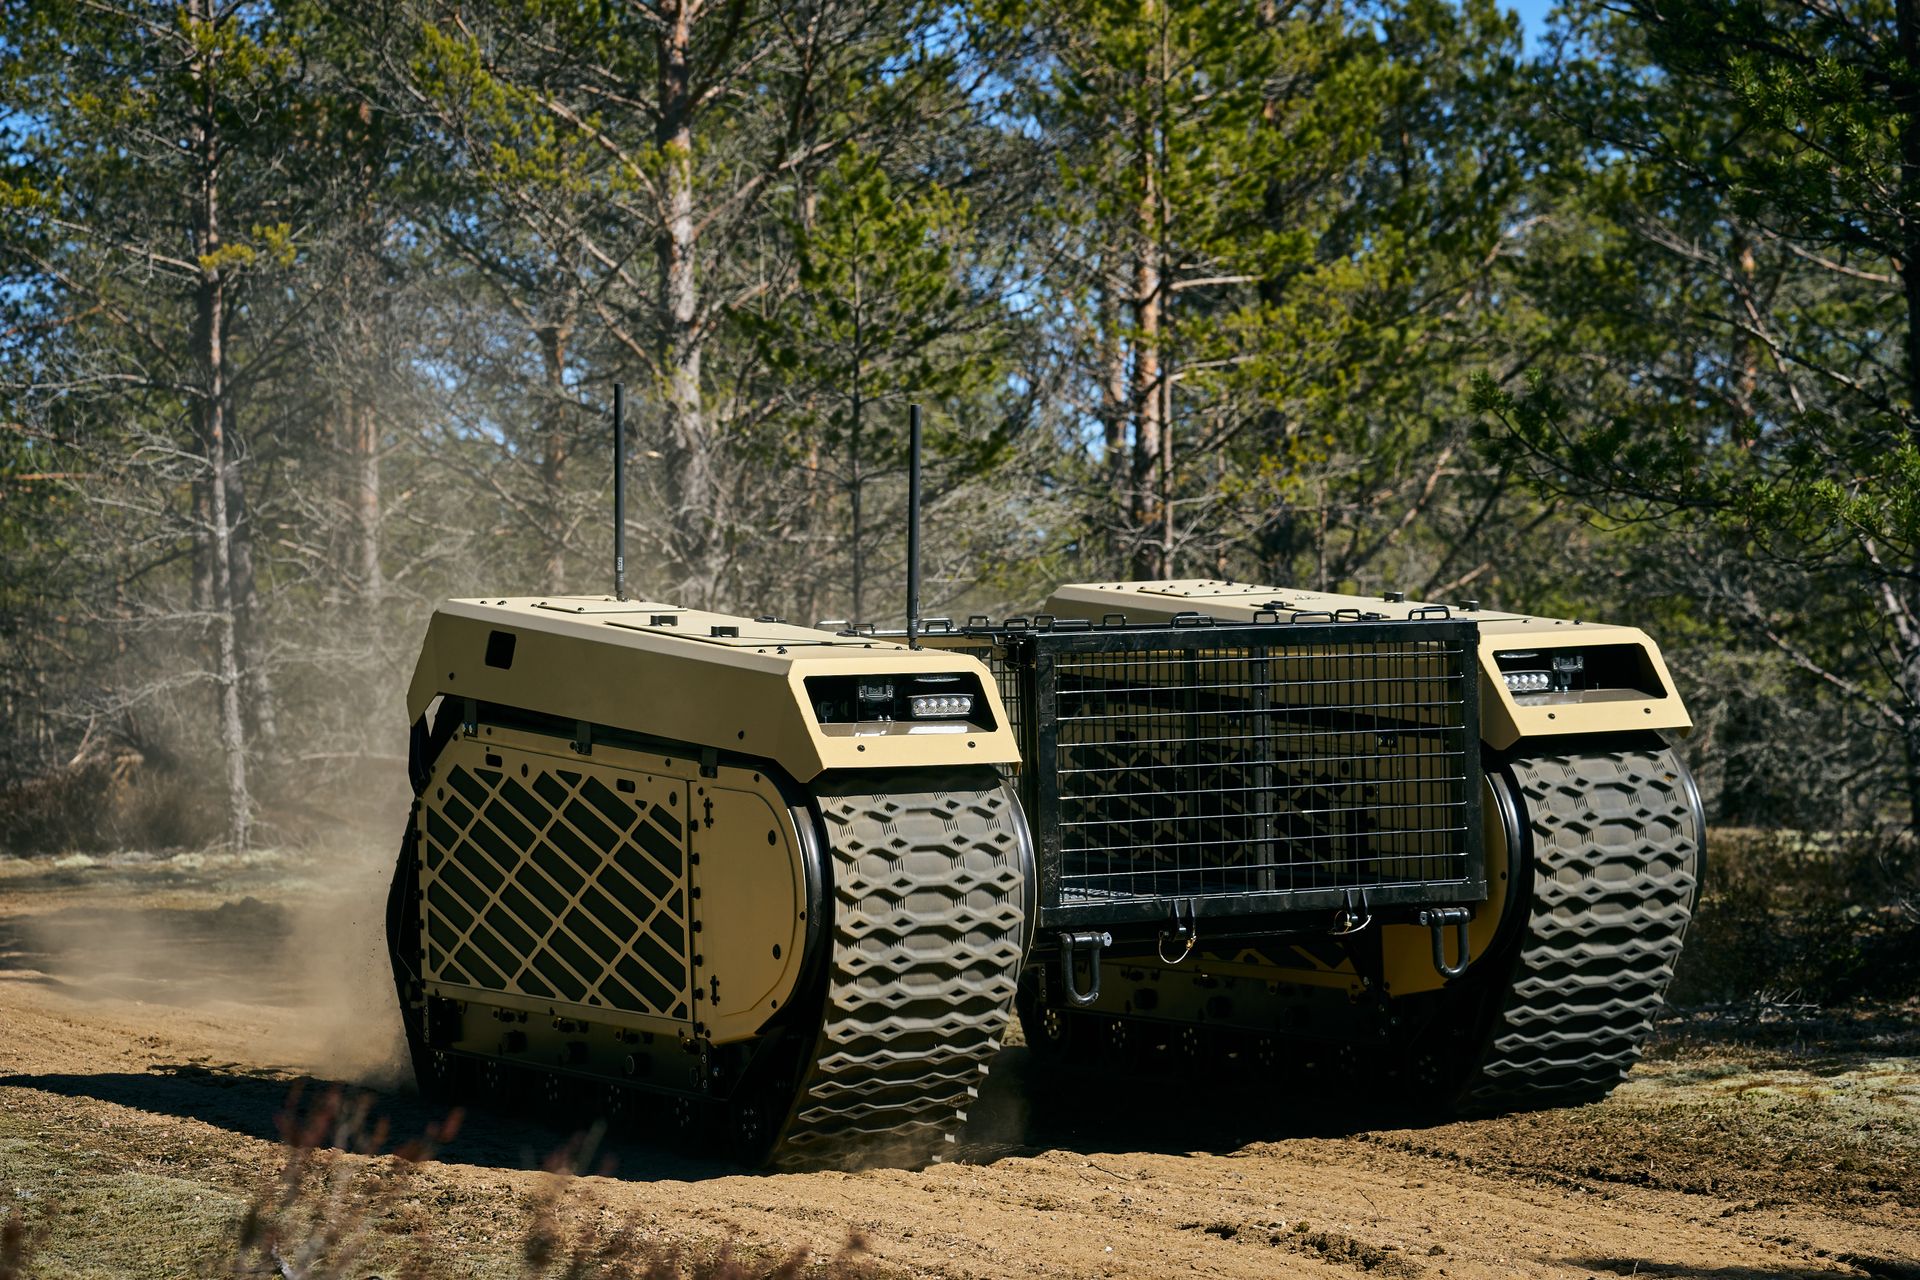 Peta generacija Milrem Roboticsovih Themis UGV tenkova opisana je kao "višenamjensko vozilo na gusjenicama", koje se može opremiti raznim tehnologijama za ratovanje kao što su sustavi naoružanja, privezane bespilotne letjelice i uređaji za otkrivanje IED-a